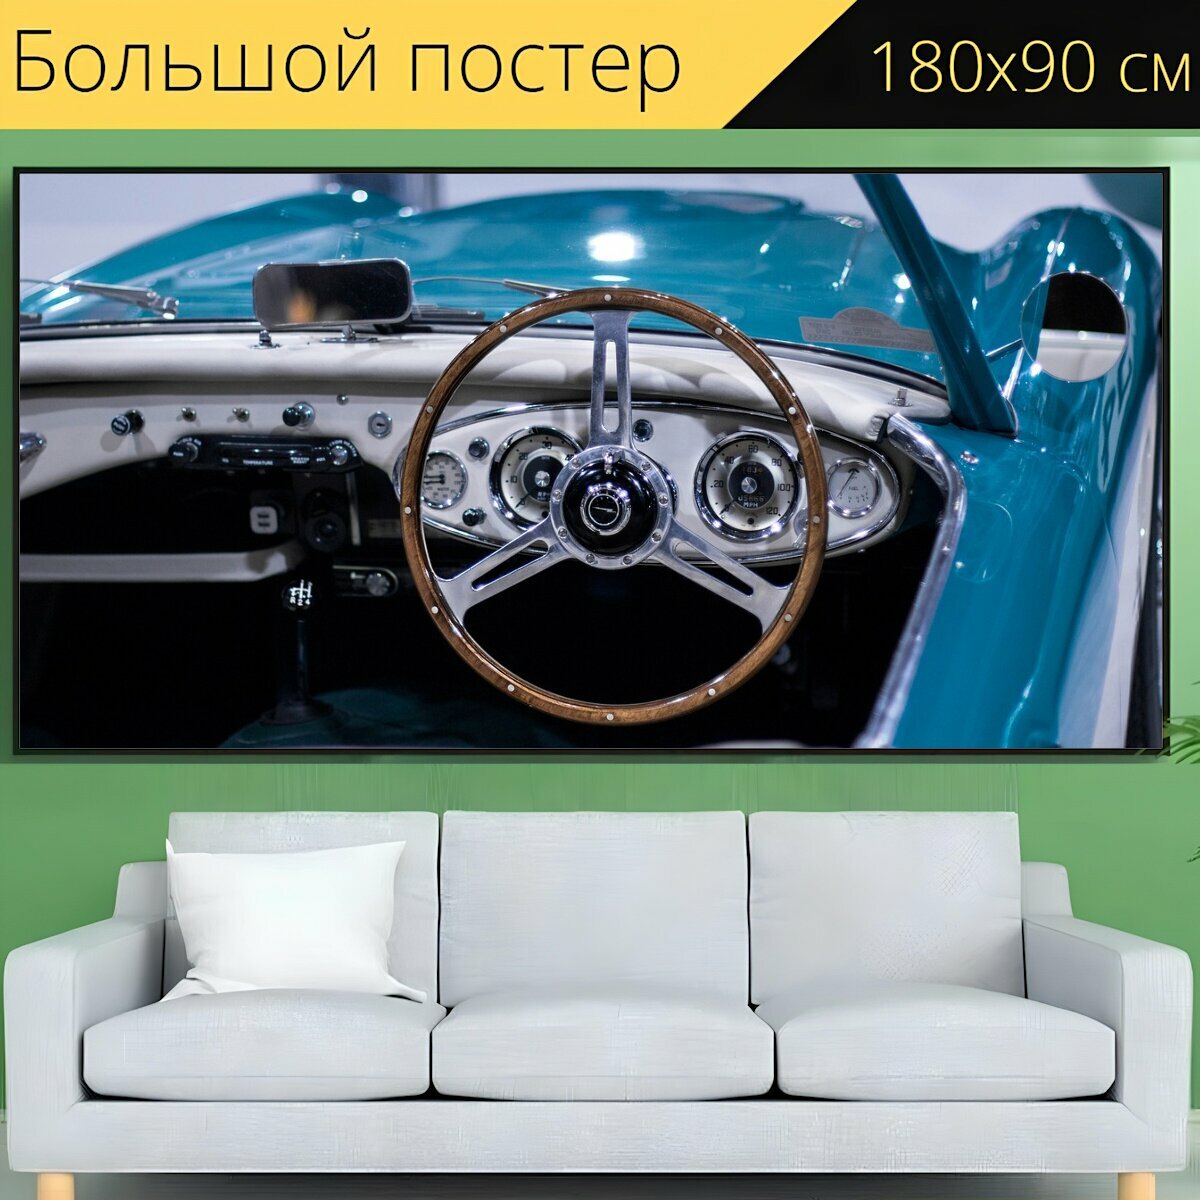 Большой постер "Рулевое колесо, машина, рулевое управление" 180 x 90 см. для интерьера